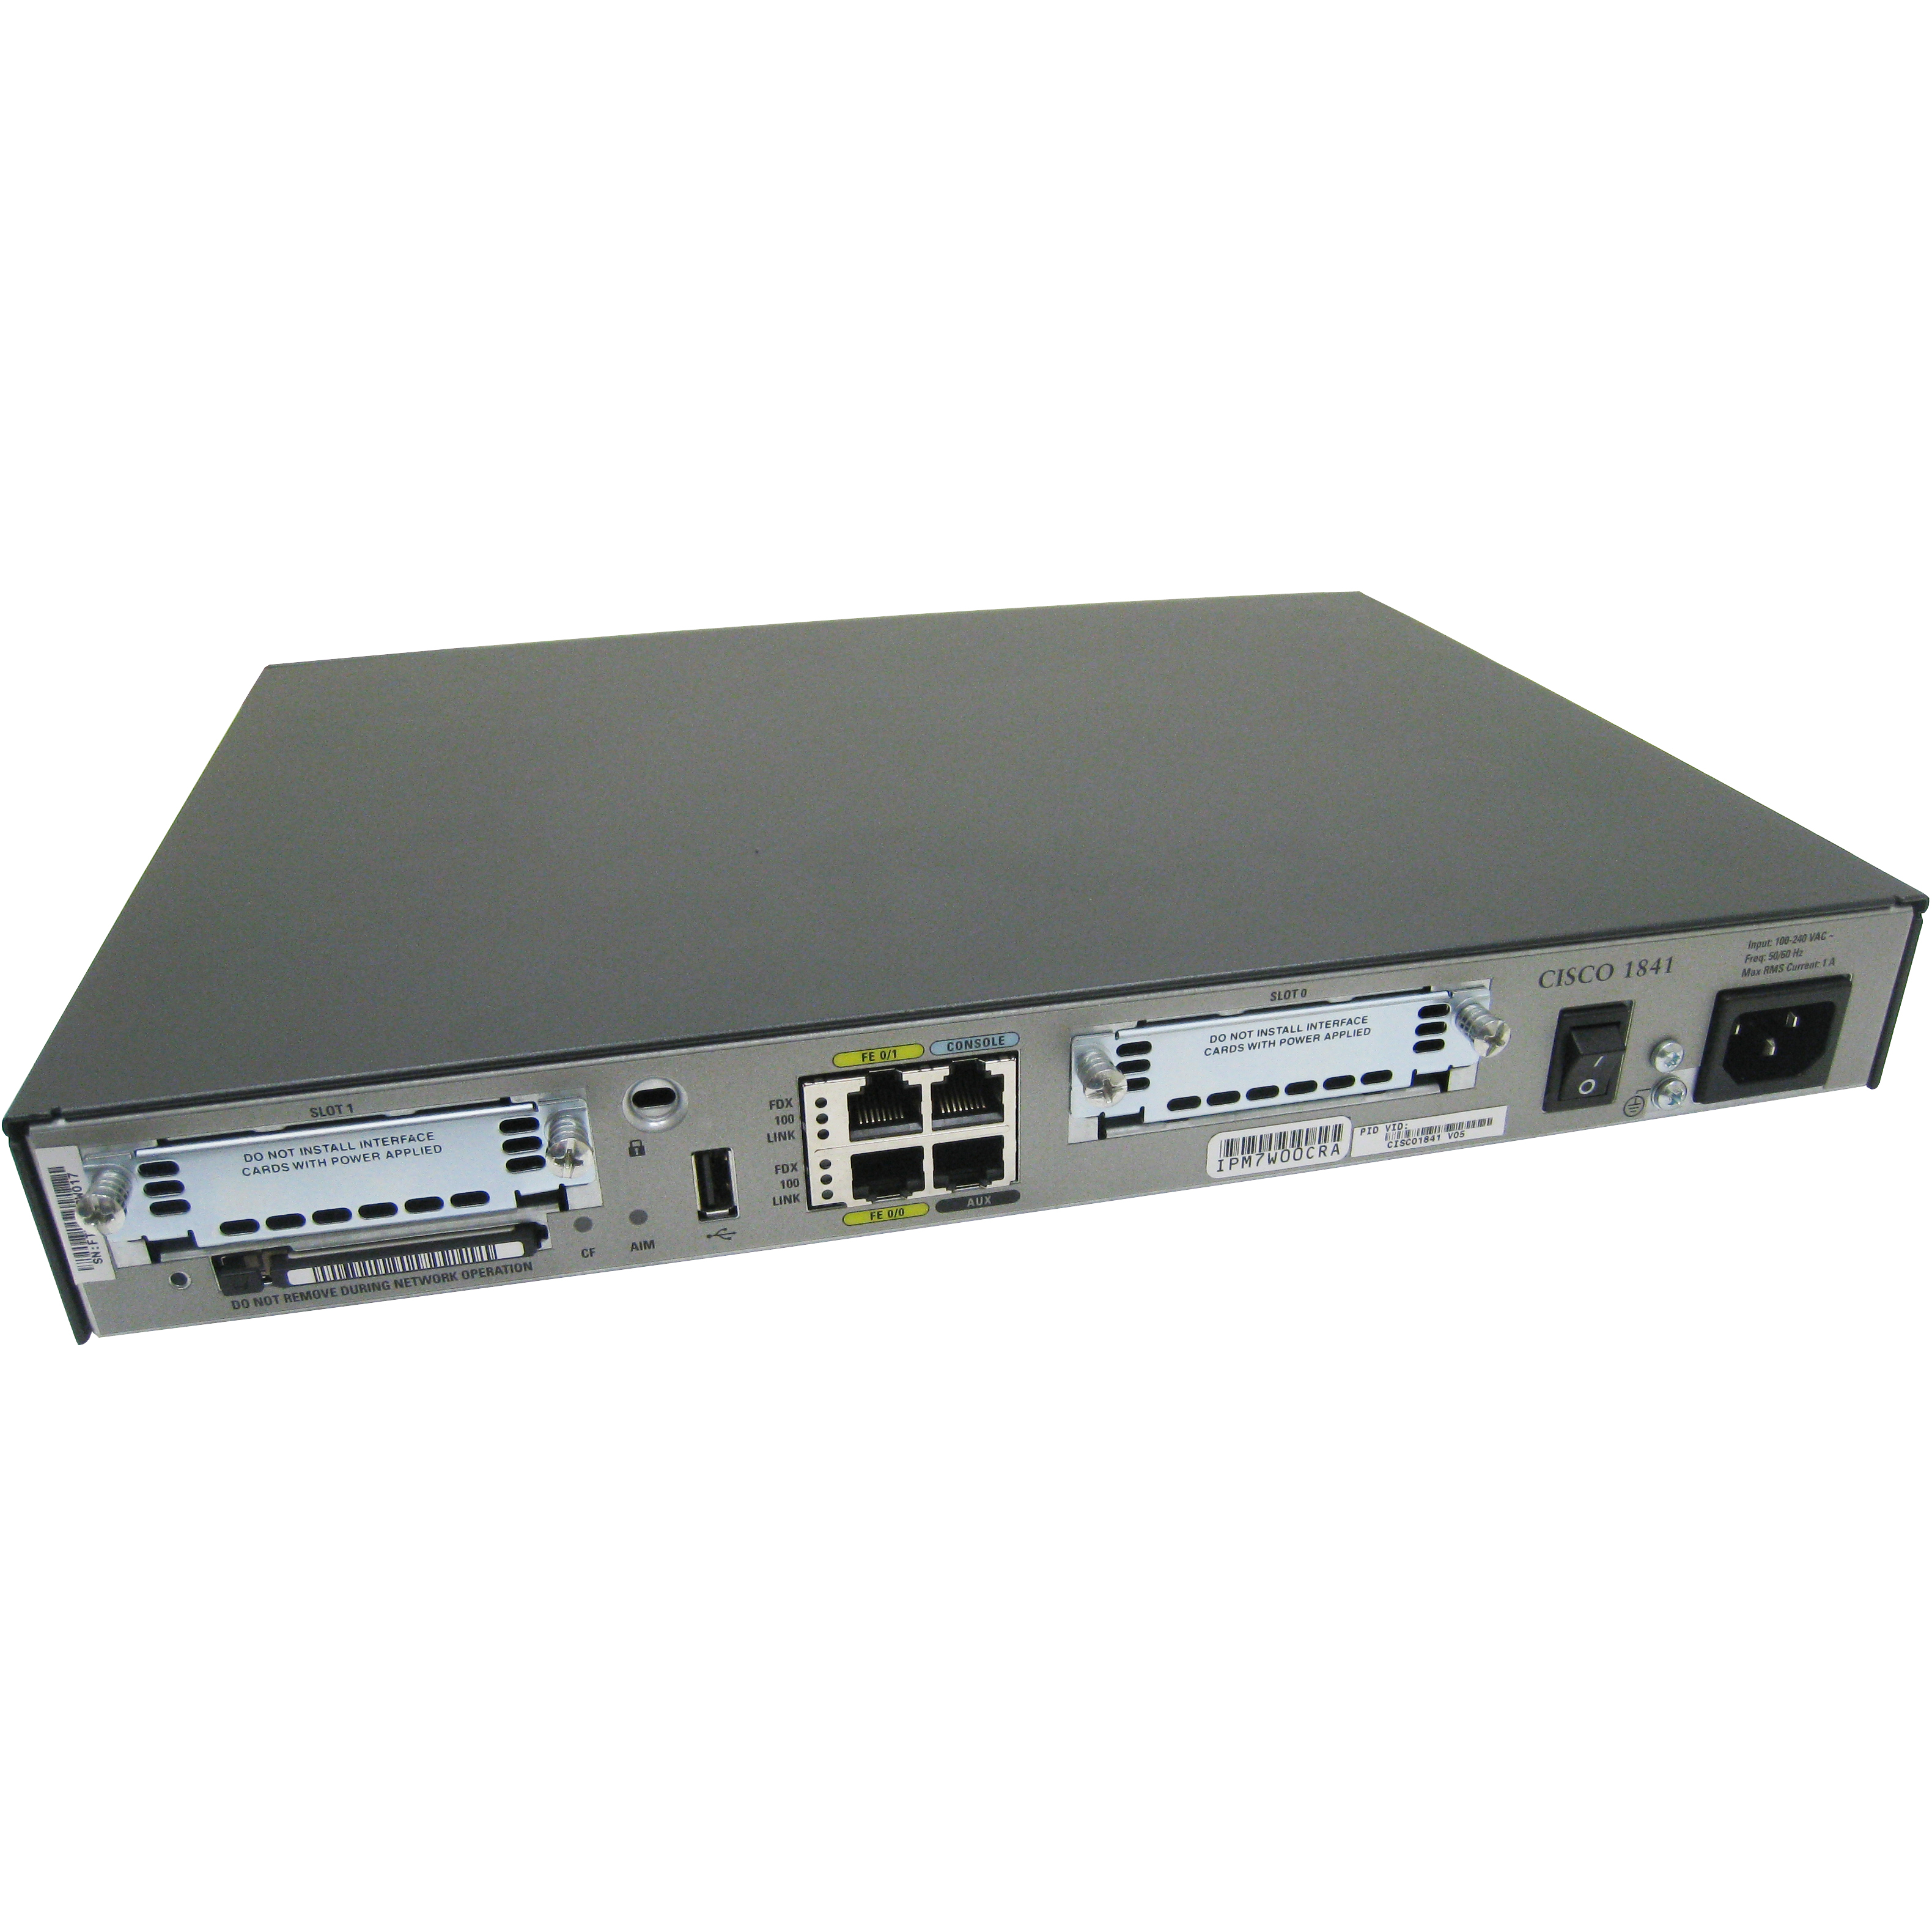 Cisco CISCO1841-ADSL2-M